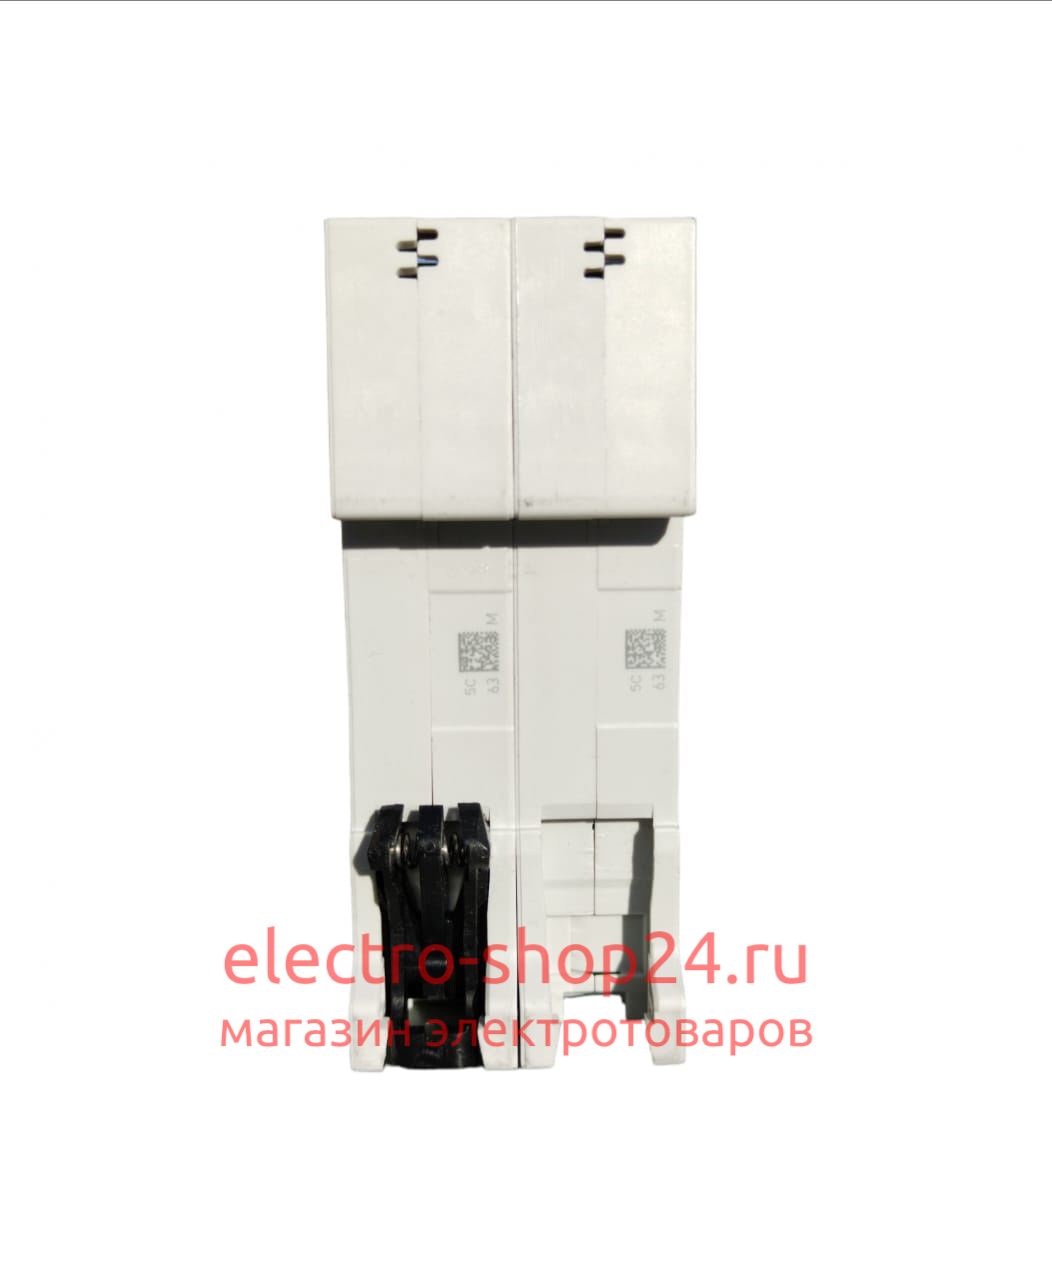 S202 C63 Автоматический выключатель 2-полюсный 63А 6кА (хар-ка C) ABB 2CDS252001R0634 2CDS252001R0634 - магазин электротехники Electroshop